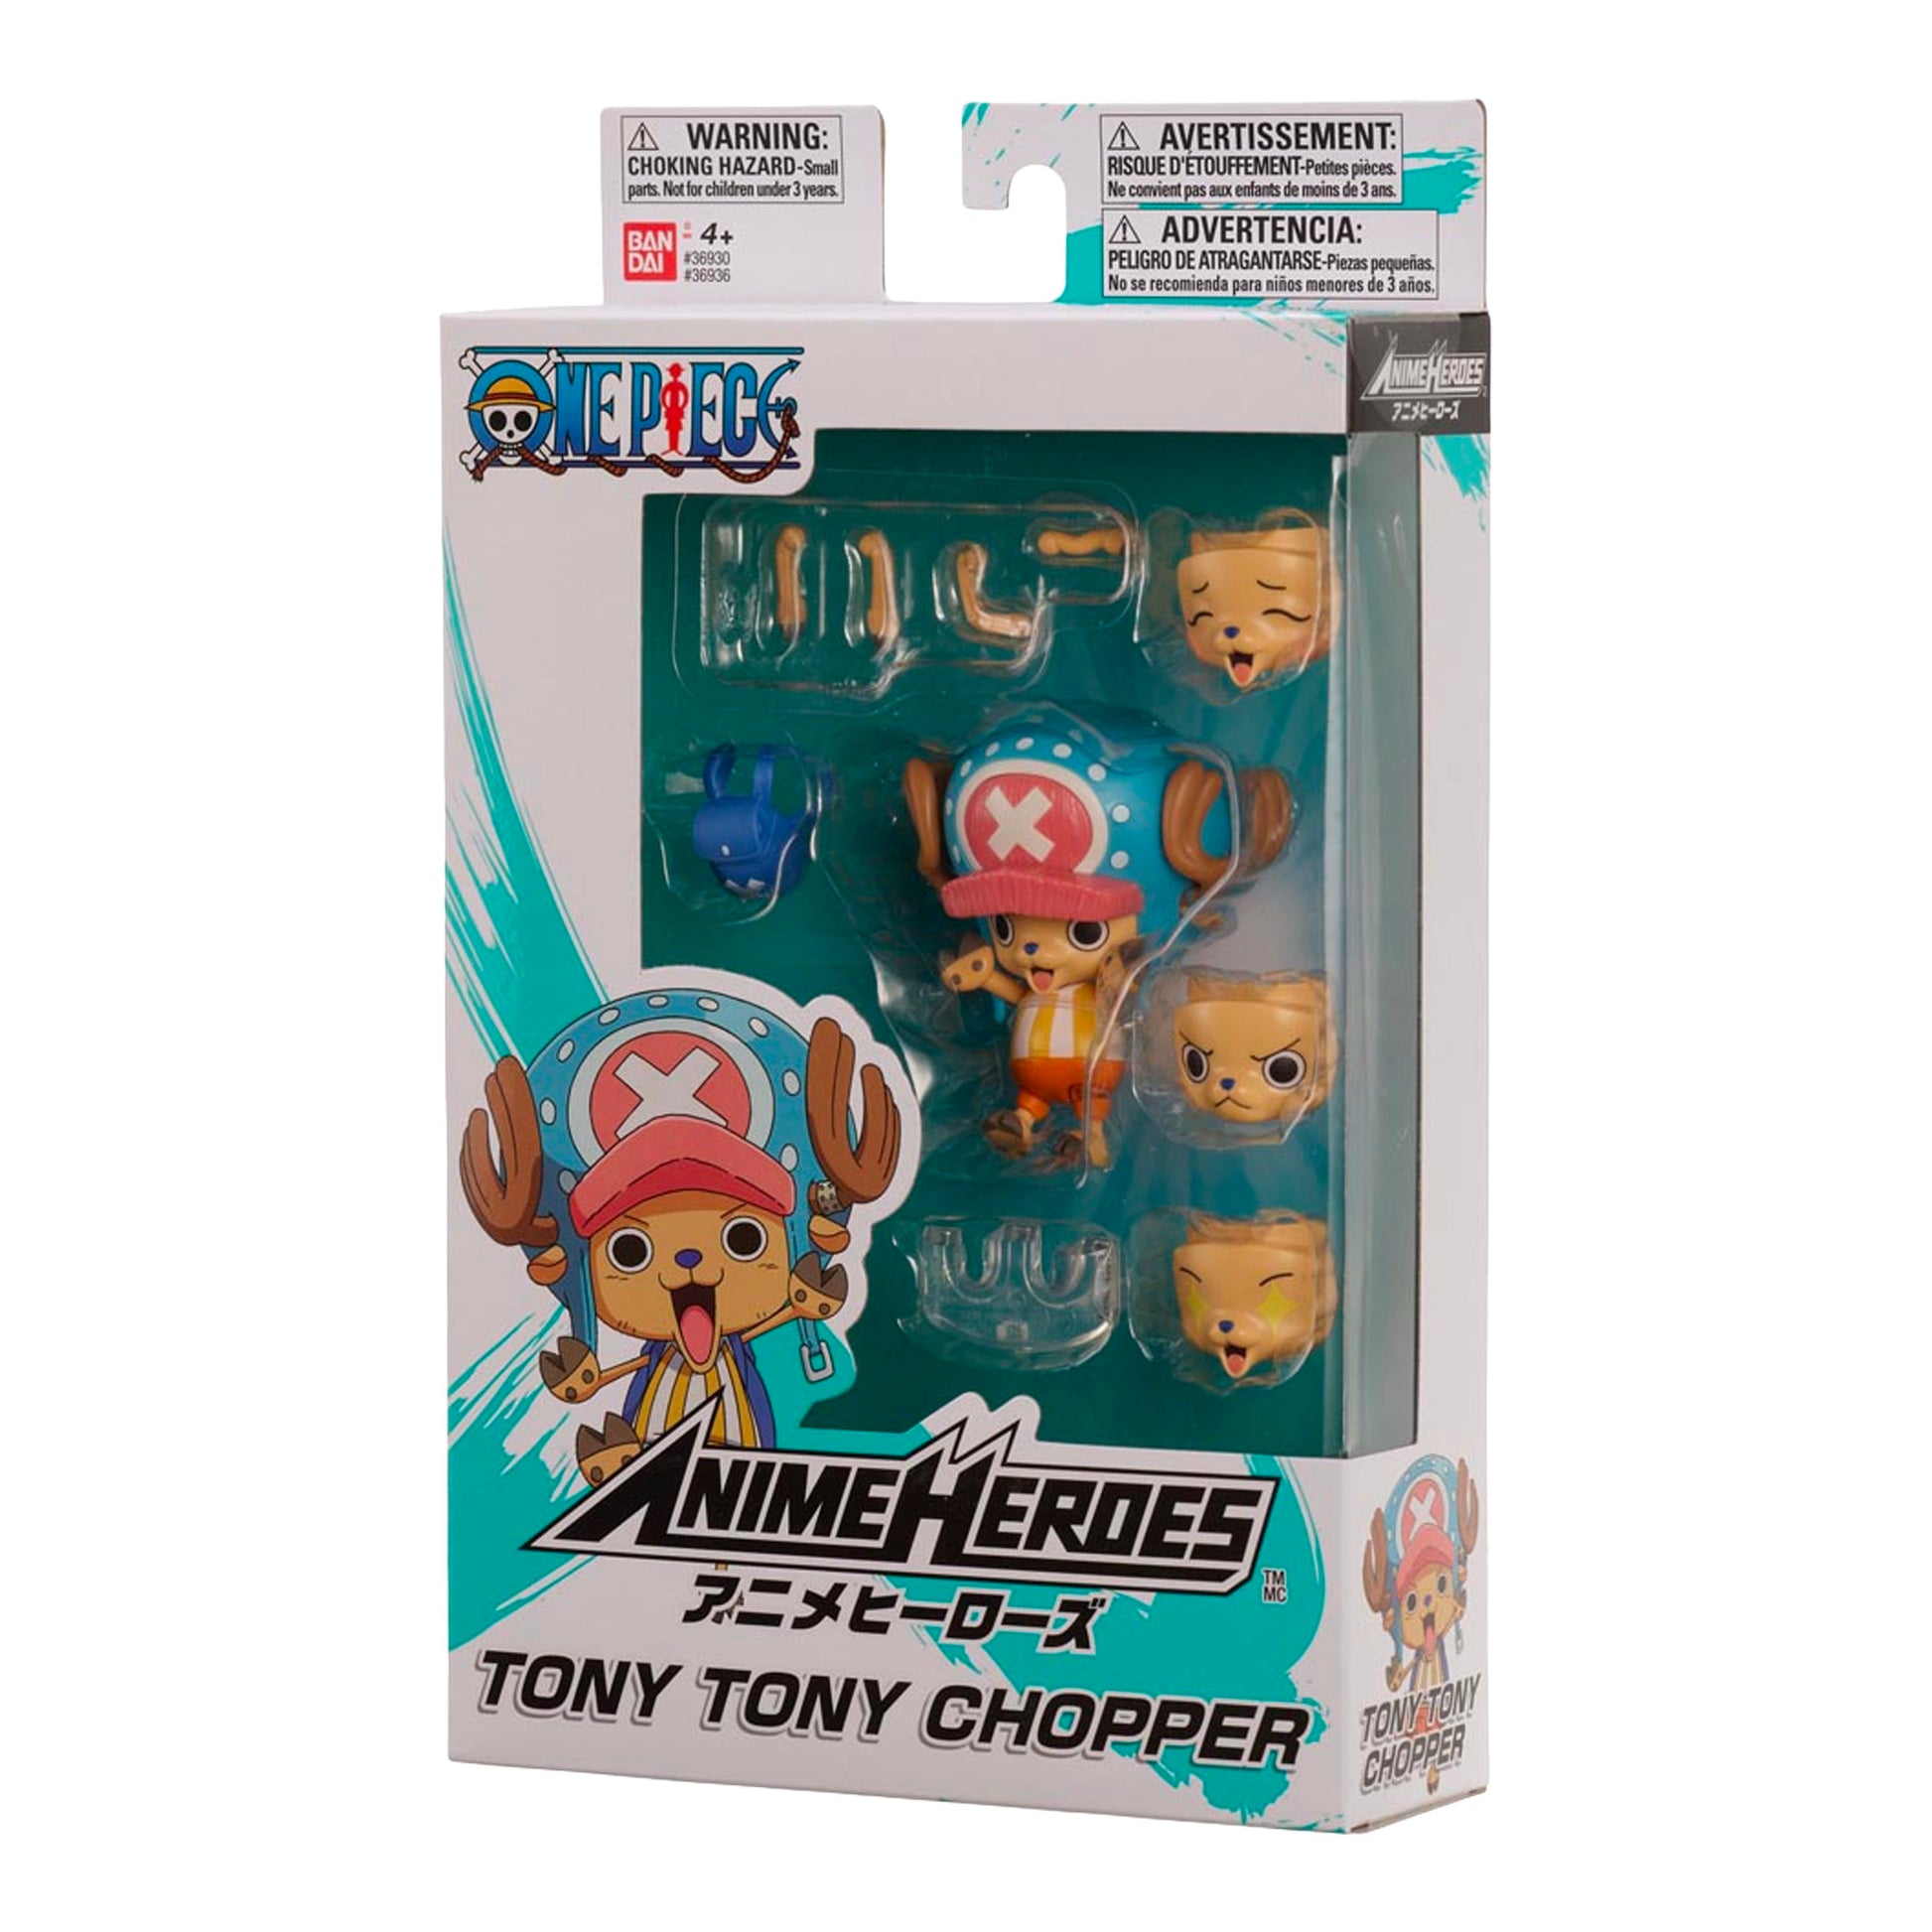 Anime Lover — Facts & Trivia About Tony Tony Chopper